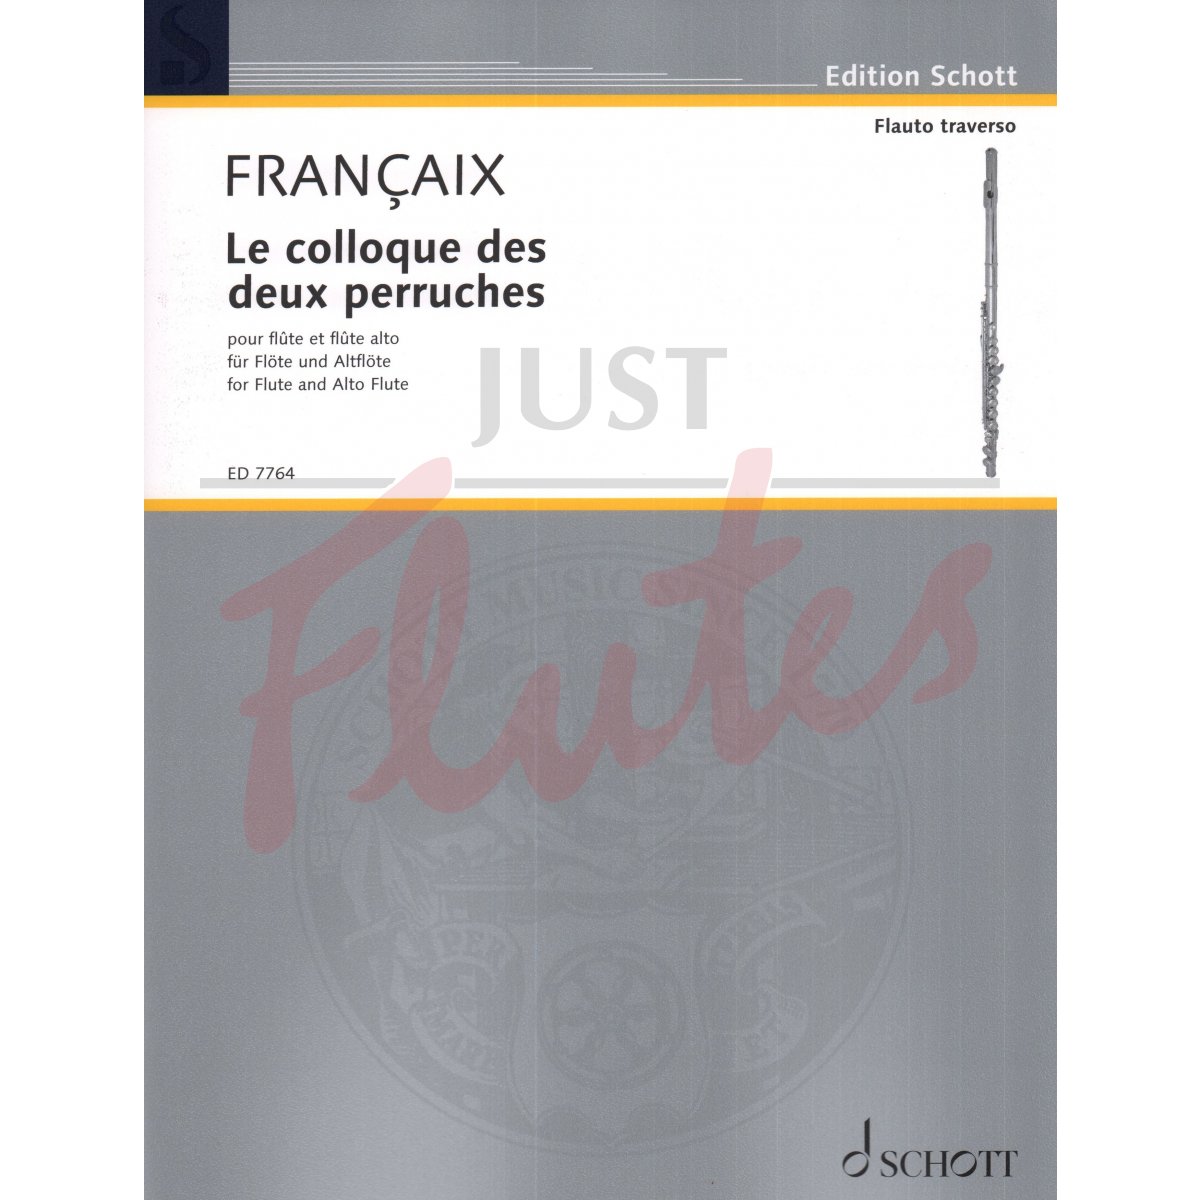 Le Colloque des deux perruches for Flute and Alto Flute